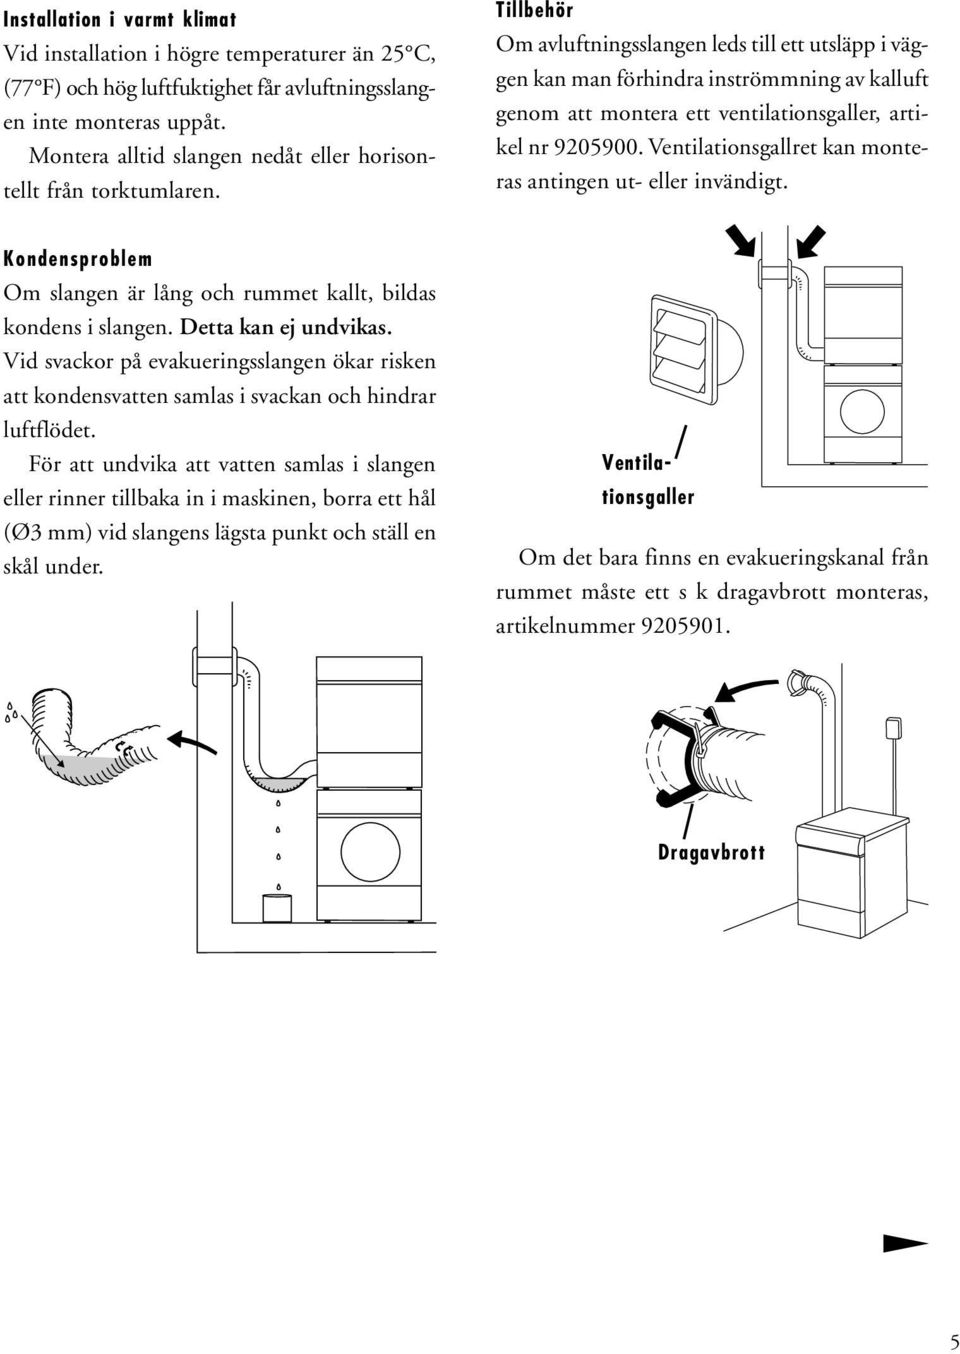 Tillbehör Om avluftningsslangen leds till ett utsläpp i väggen kan man förhindra inströmmning av kalluft genom att montera ett ventilationsgaller, artikel nr 905900.